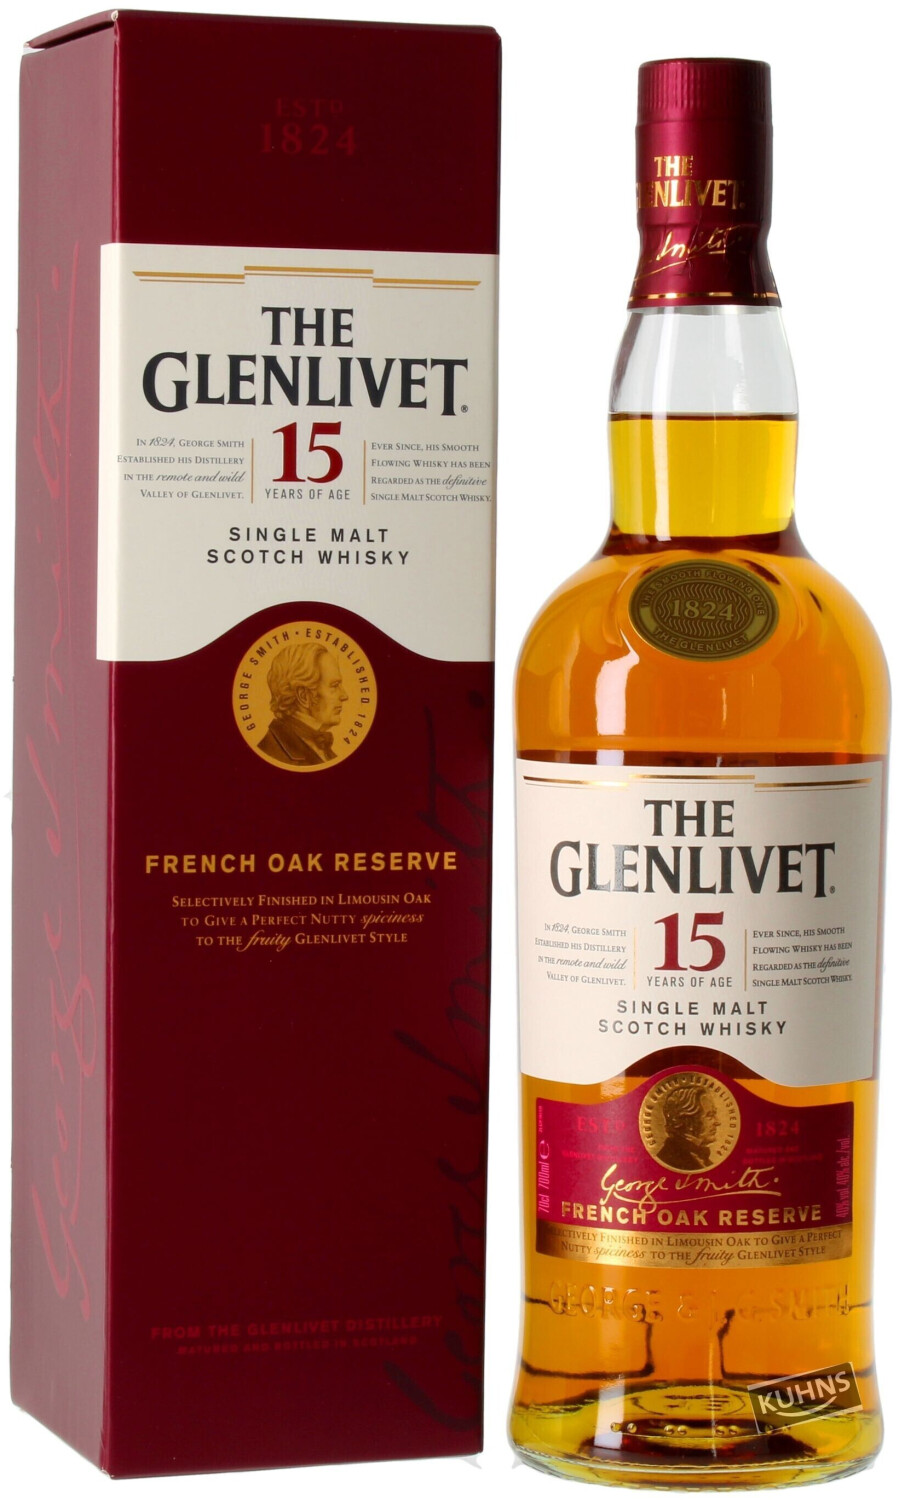 The Glenlivet 15 Preisvergleich ab 40% € | 42,89 bei Jahre